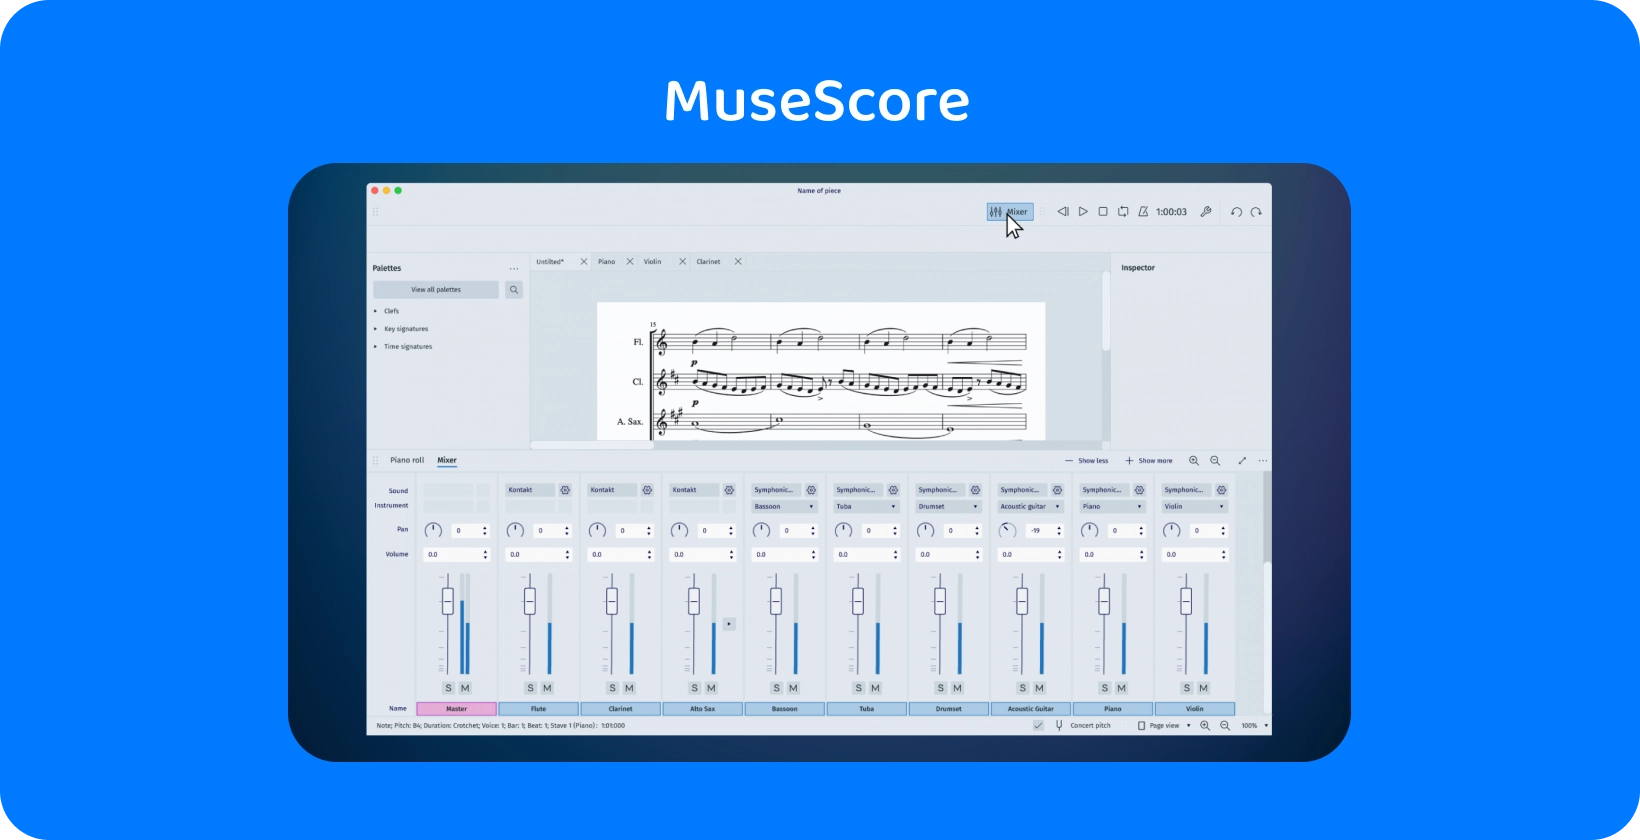 MuseScore界面展示了用于音频转录的混音器工具，这对音乐创作者至关重要。